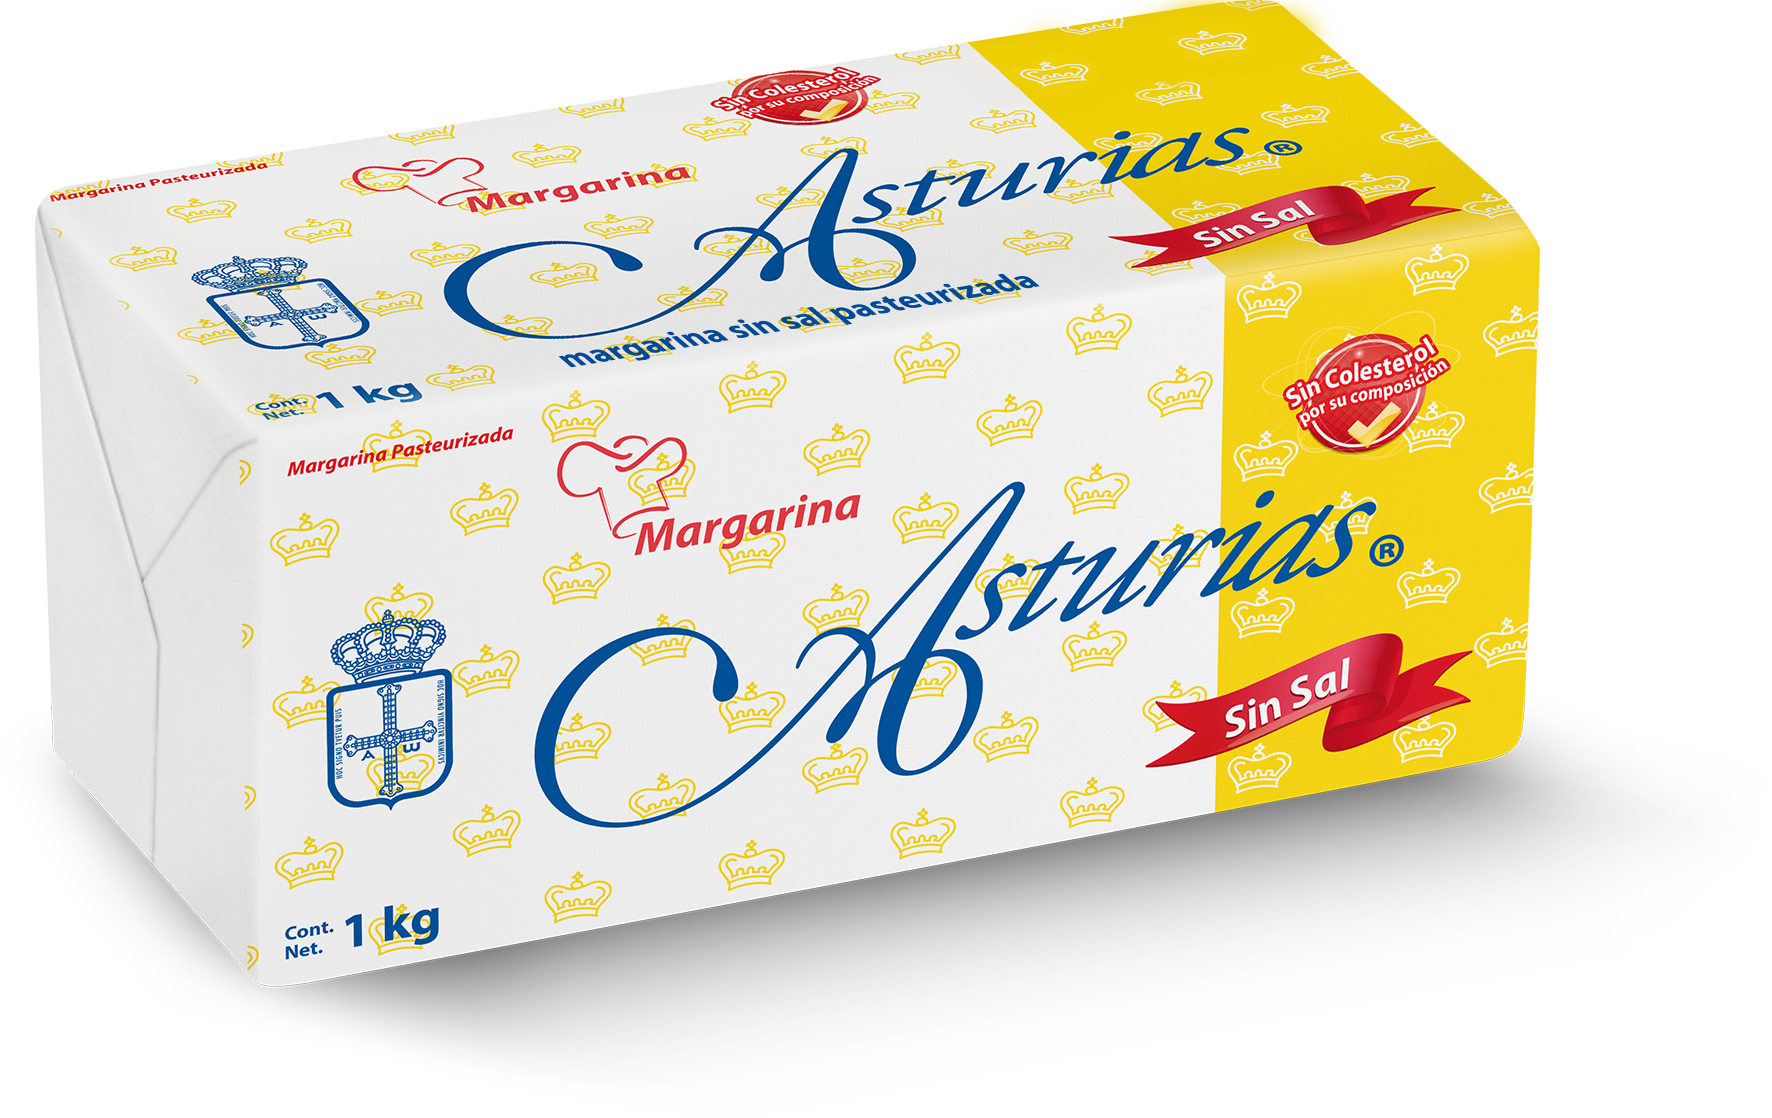 261  |  Asturias Sin Sal
Caja de 10 kg (10 barras de 1 kg)